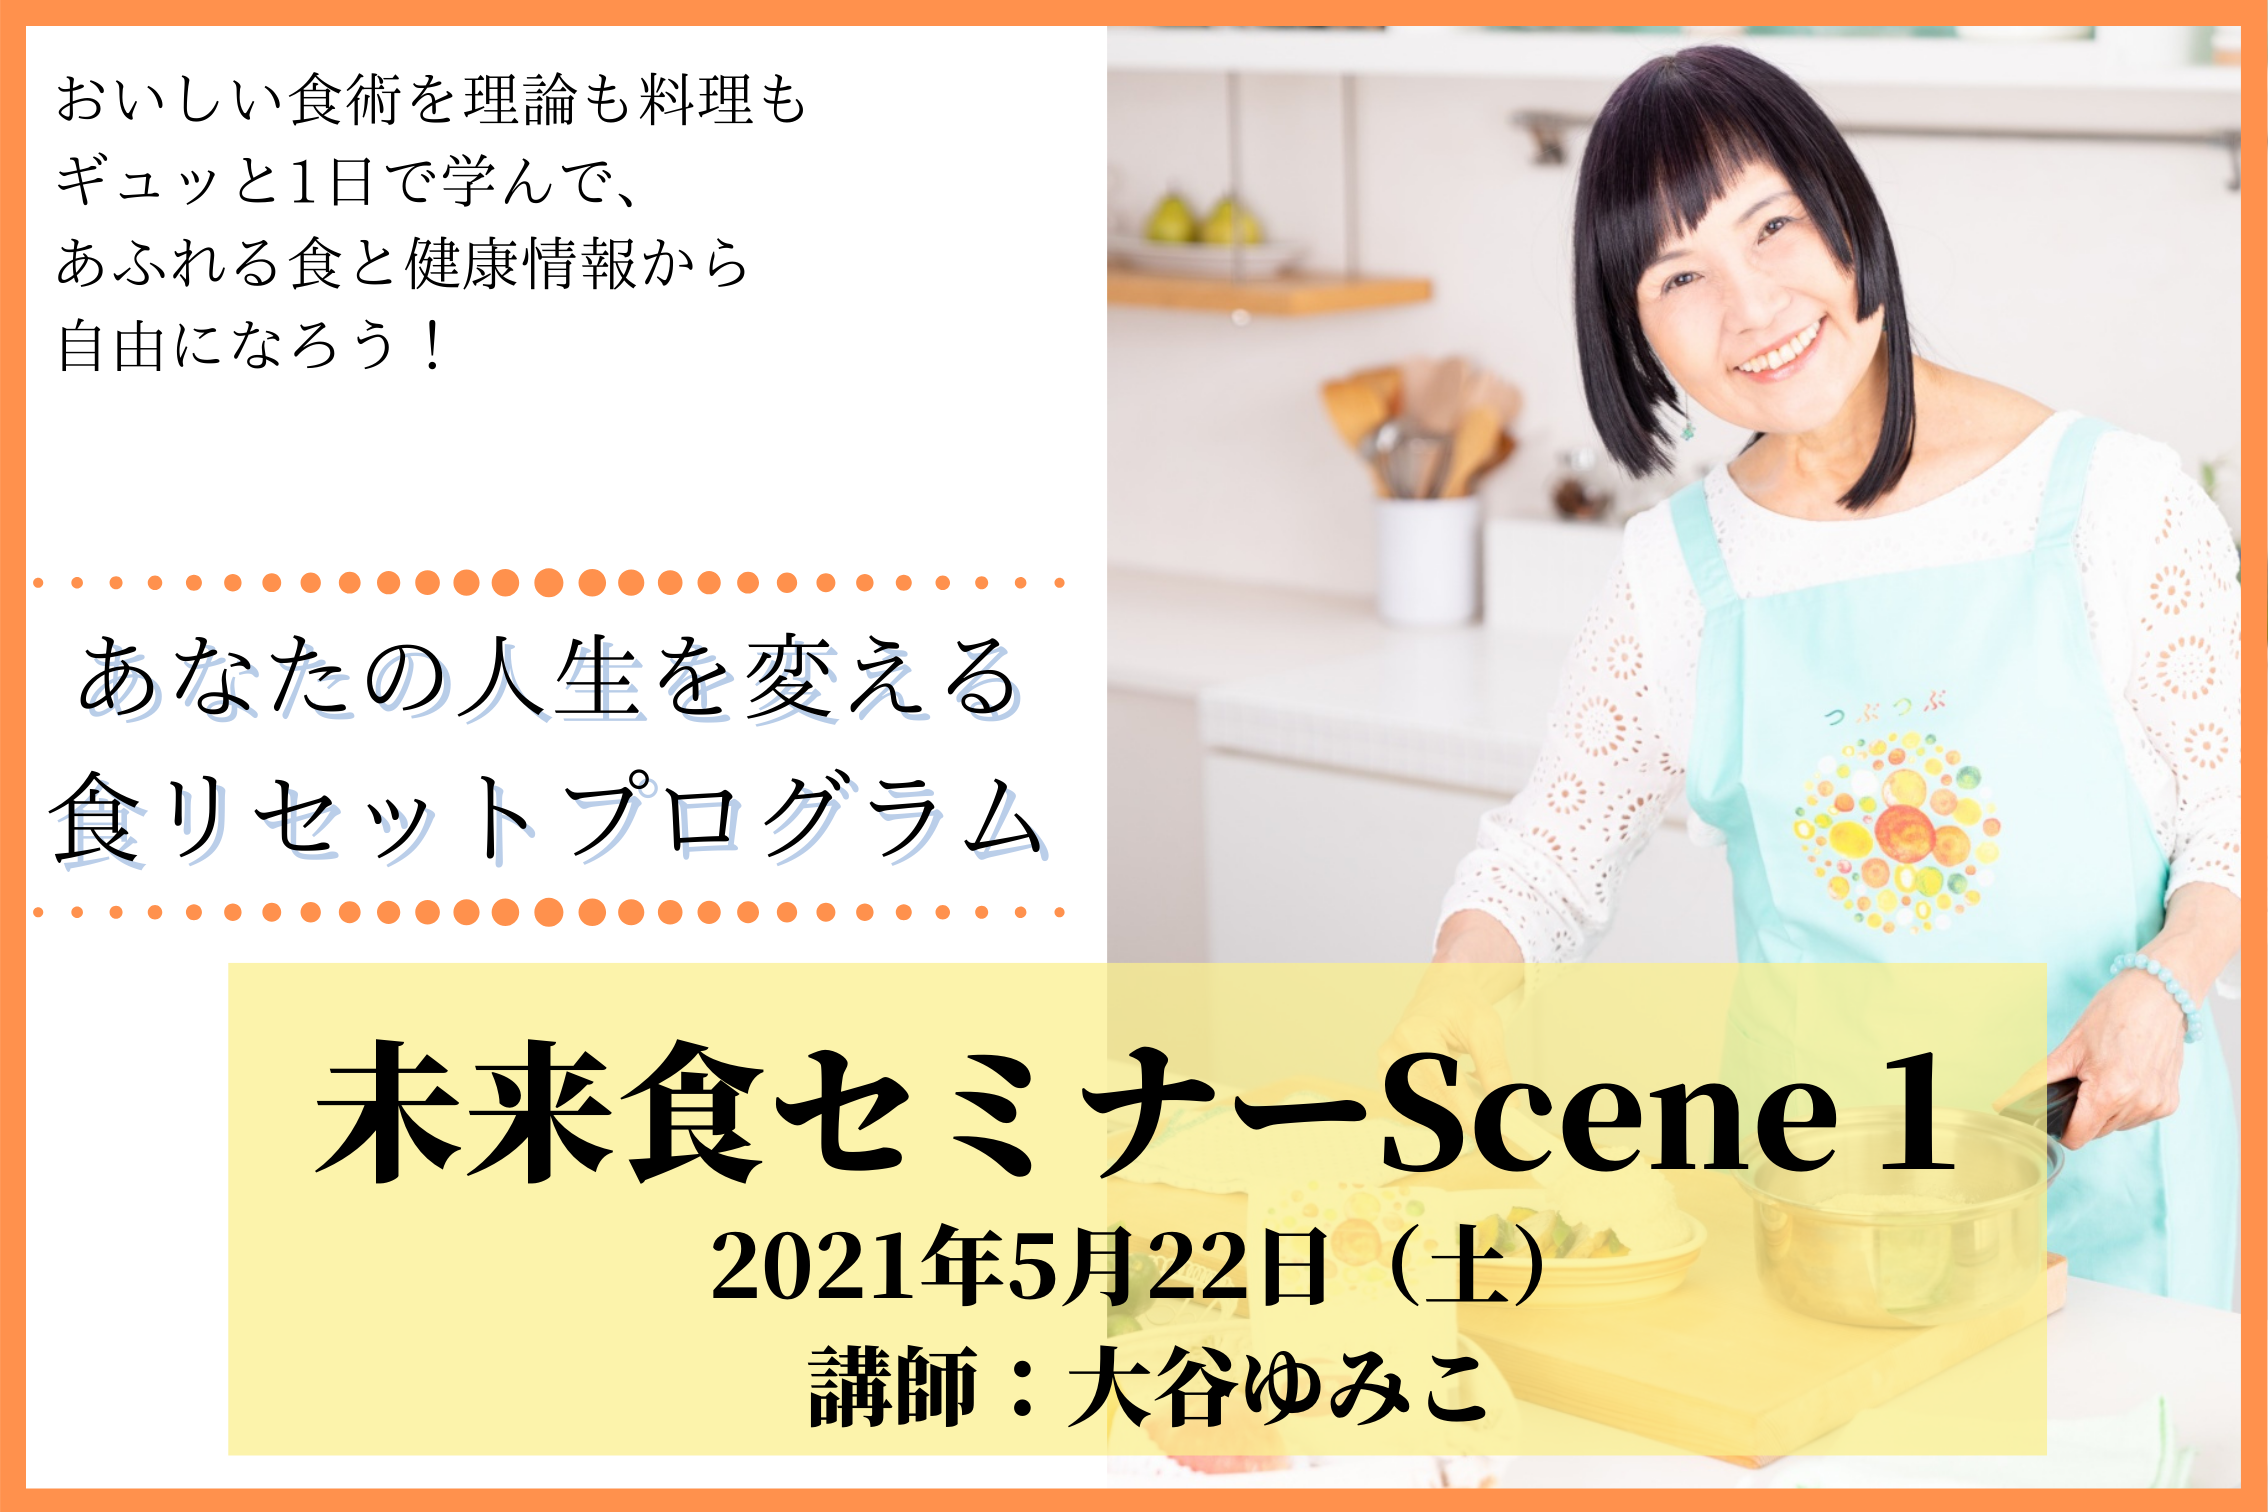 5月22日(土)大谷ゆみこ講師未来食セミナーScene1開催決定